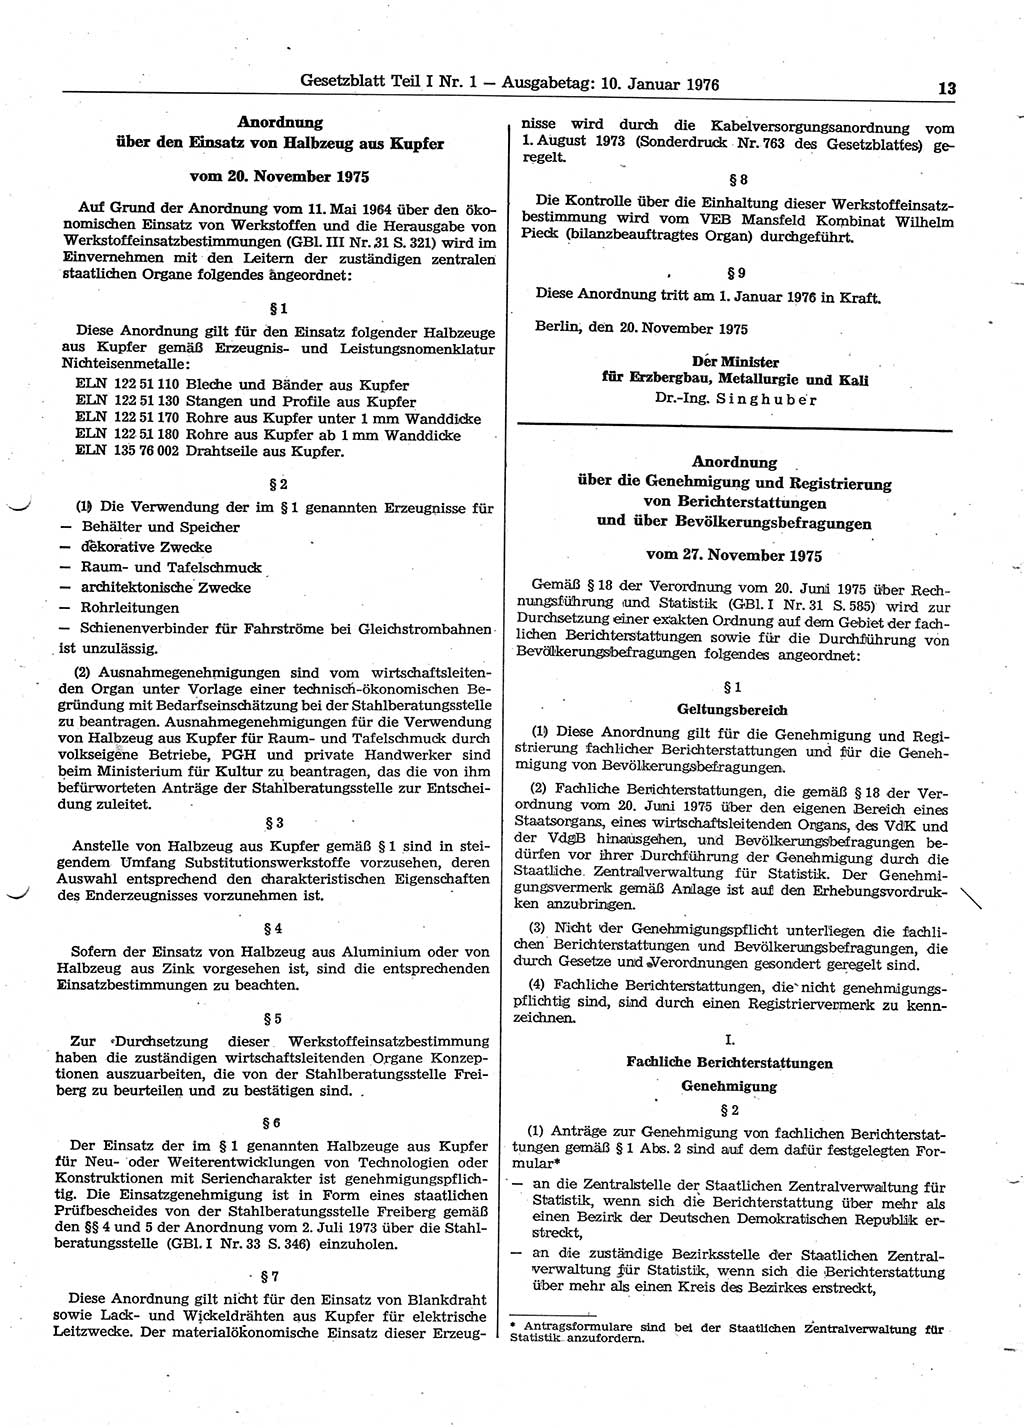 Gesetzblatt (GBl.) der Deutschen Demokratischen Republik (DDR) Teil Ⅰ 1976, Seite 13 (GBl. DDR Ⅰ 1976, S. 13)